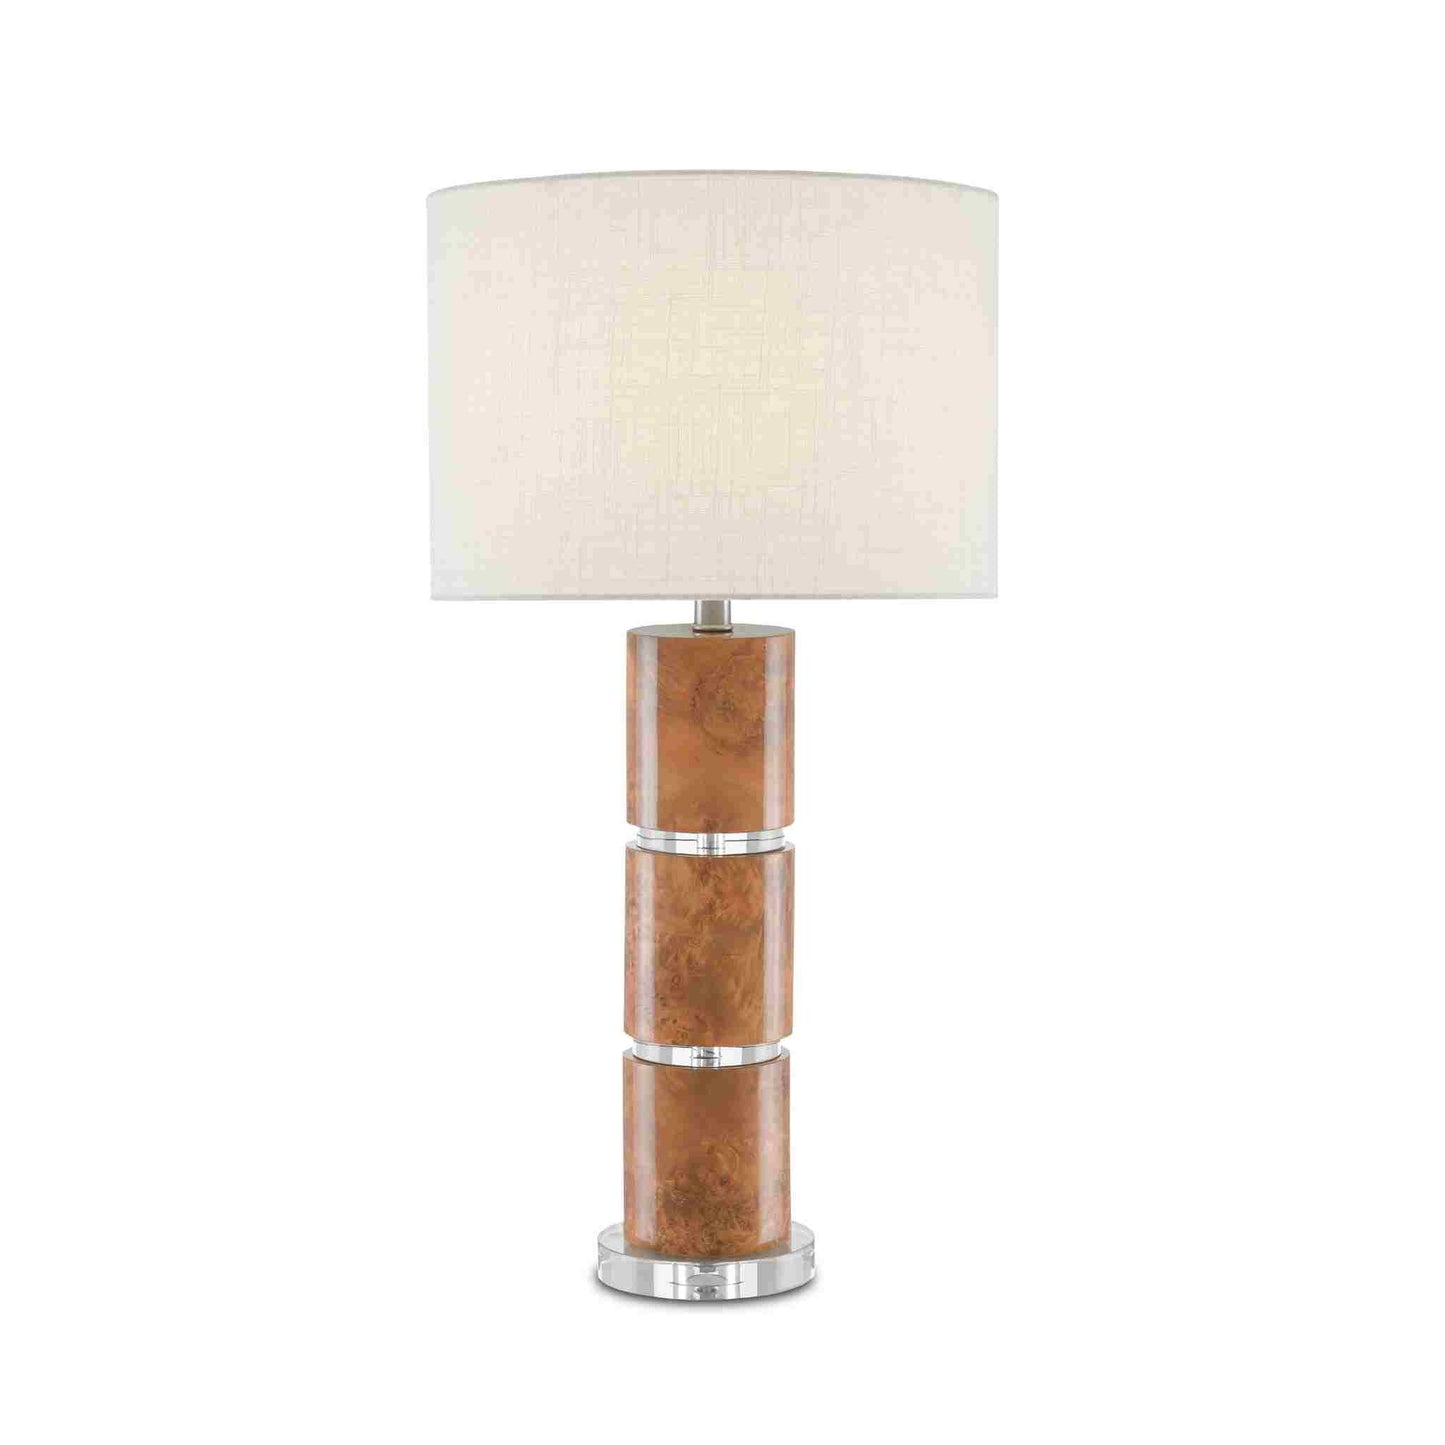 Birdseye Table Lamp 29.5"h x 15"dia.